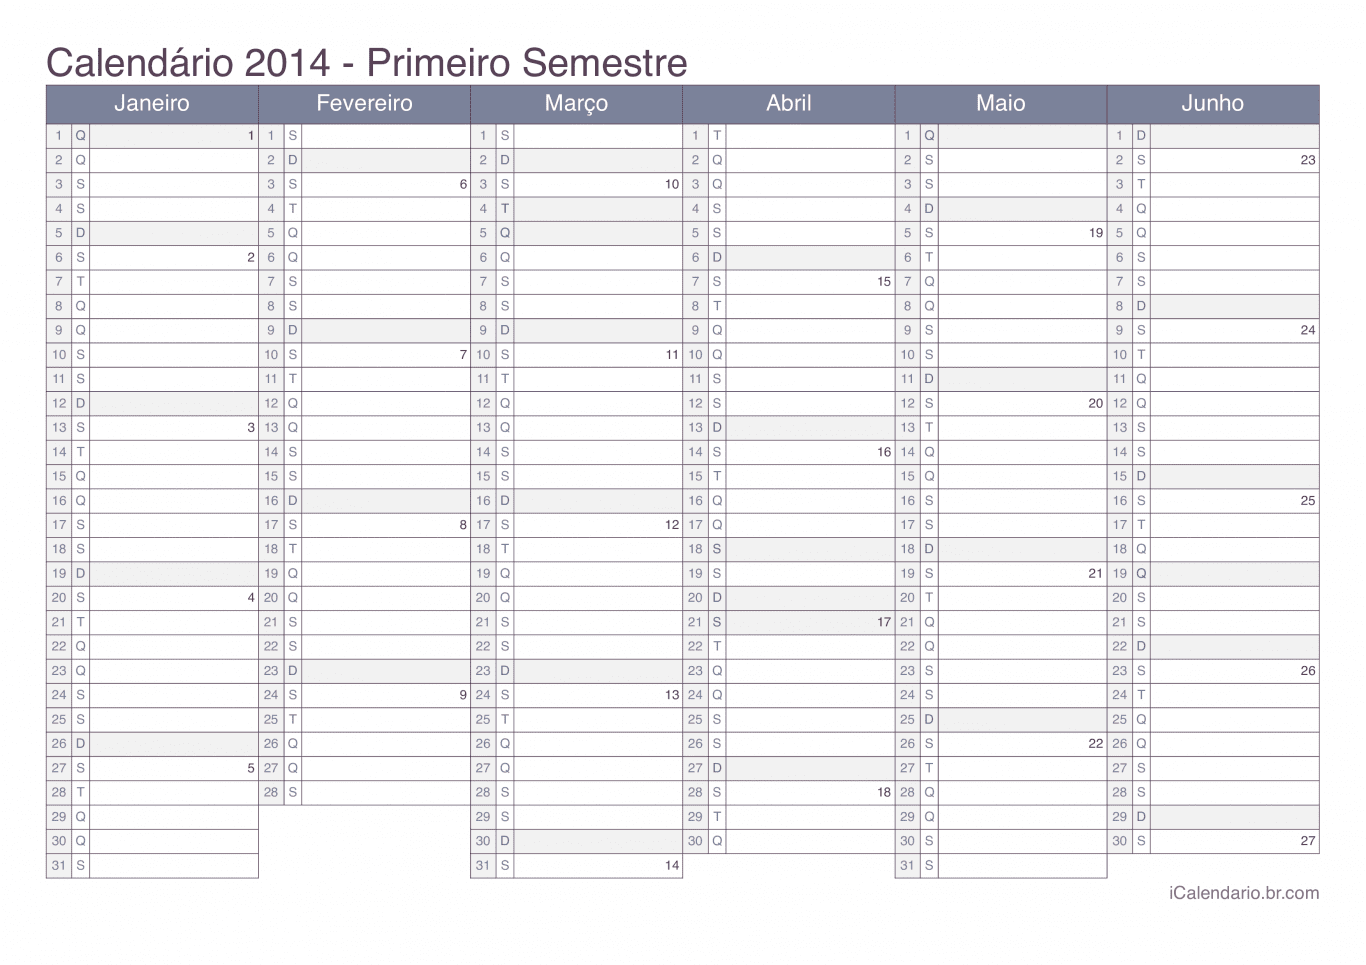 Calendário por semestre com números da semana 2014 - Office